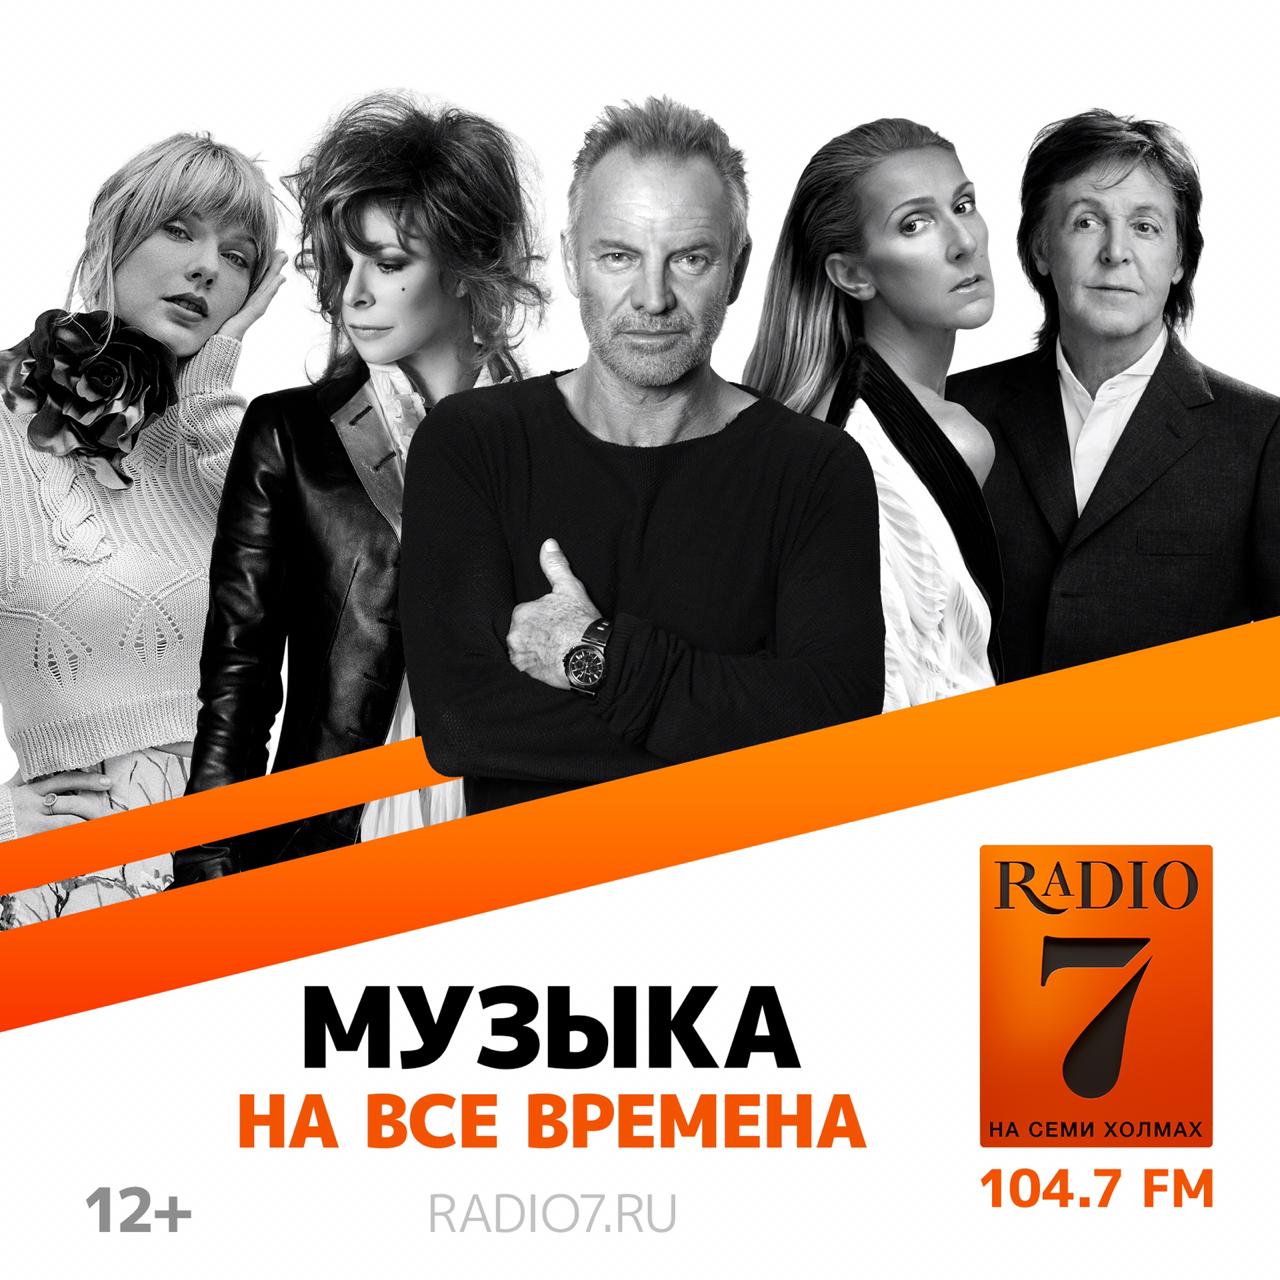 Музыка радио семь. Радио на семи холмах. Радио 7 на 7. Радио 7 на семи холмах Москва. Радио 7 реклама.